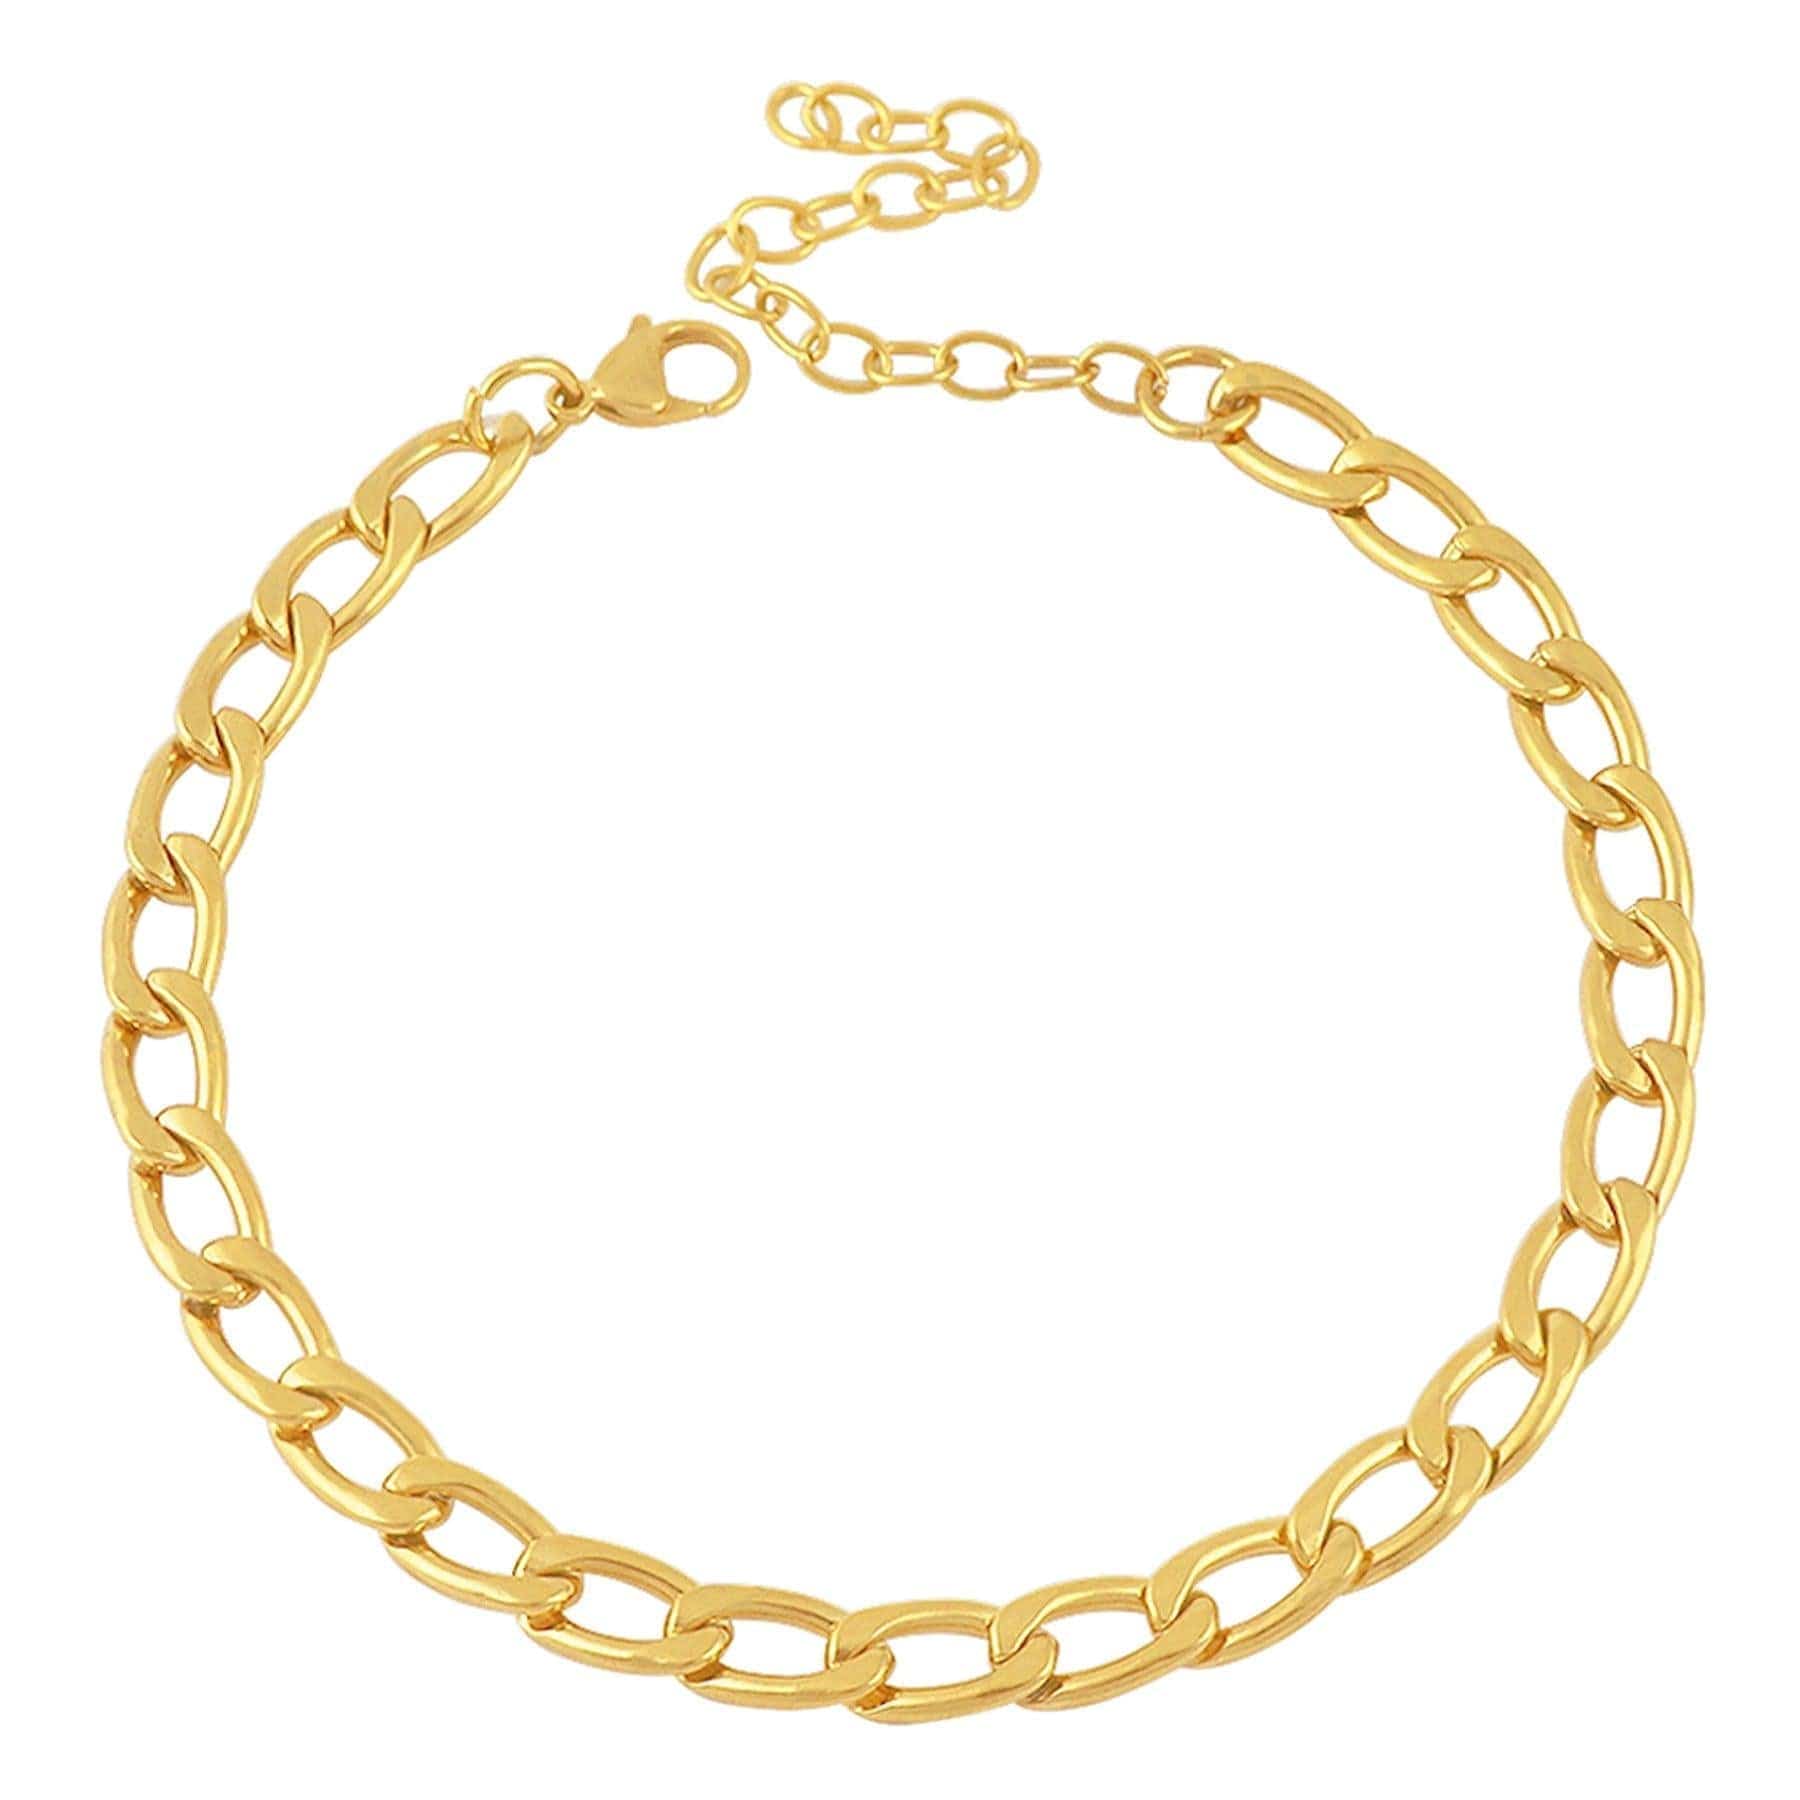 BohoMoon Stainless Steel Parisian Choker / Necklace Gold / Choker